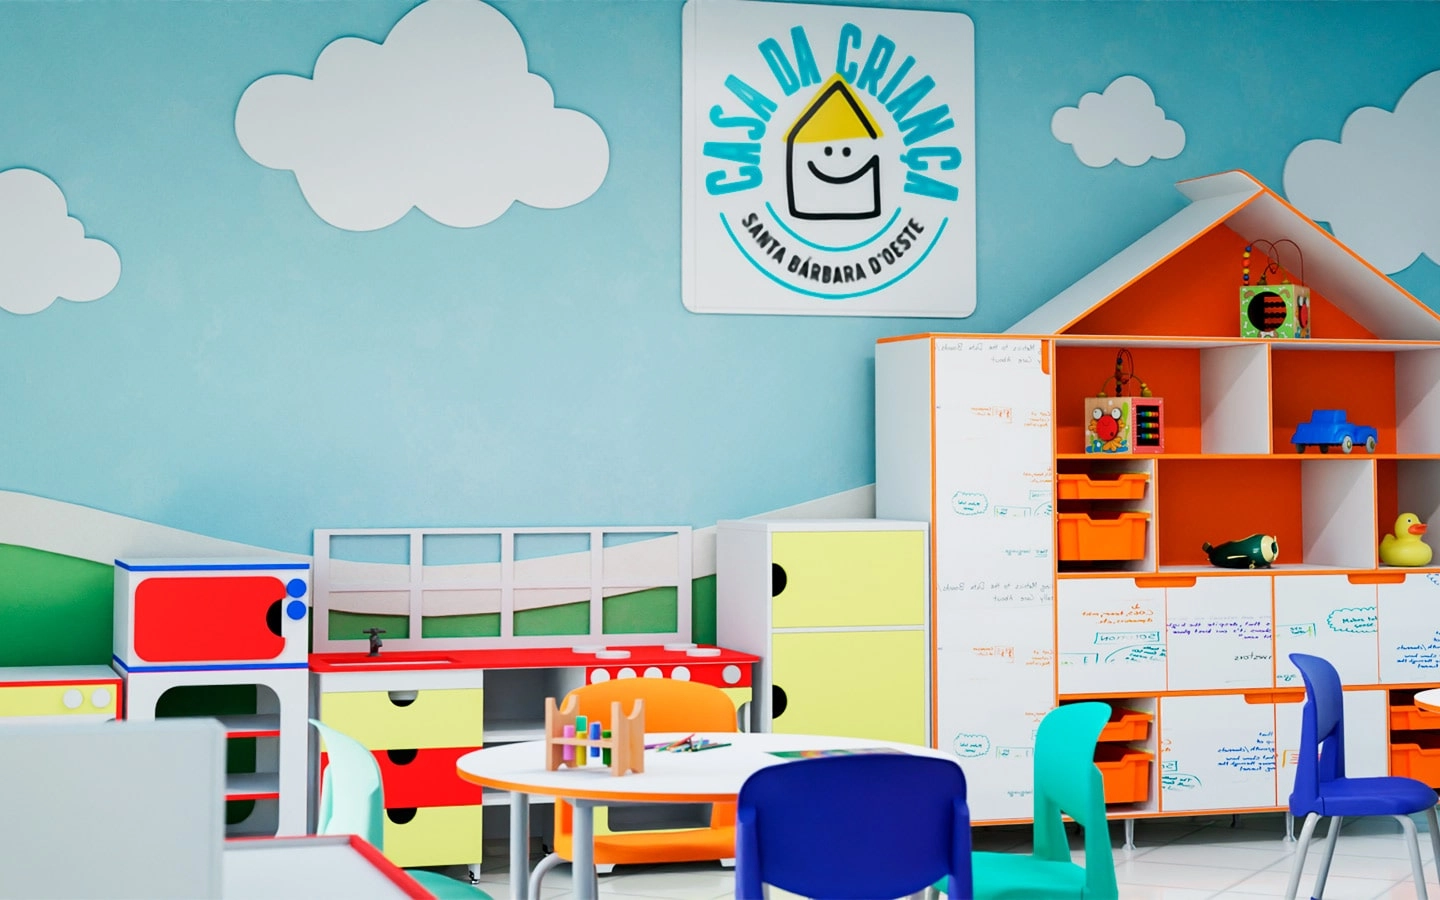 uploads/Parte de sala de aula infantil com diversos armários com brinquedos e algumas mesas redondas com cadeiras - além de pinturas de nuvens nas paredes azuis.